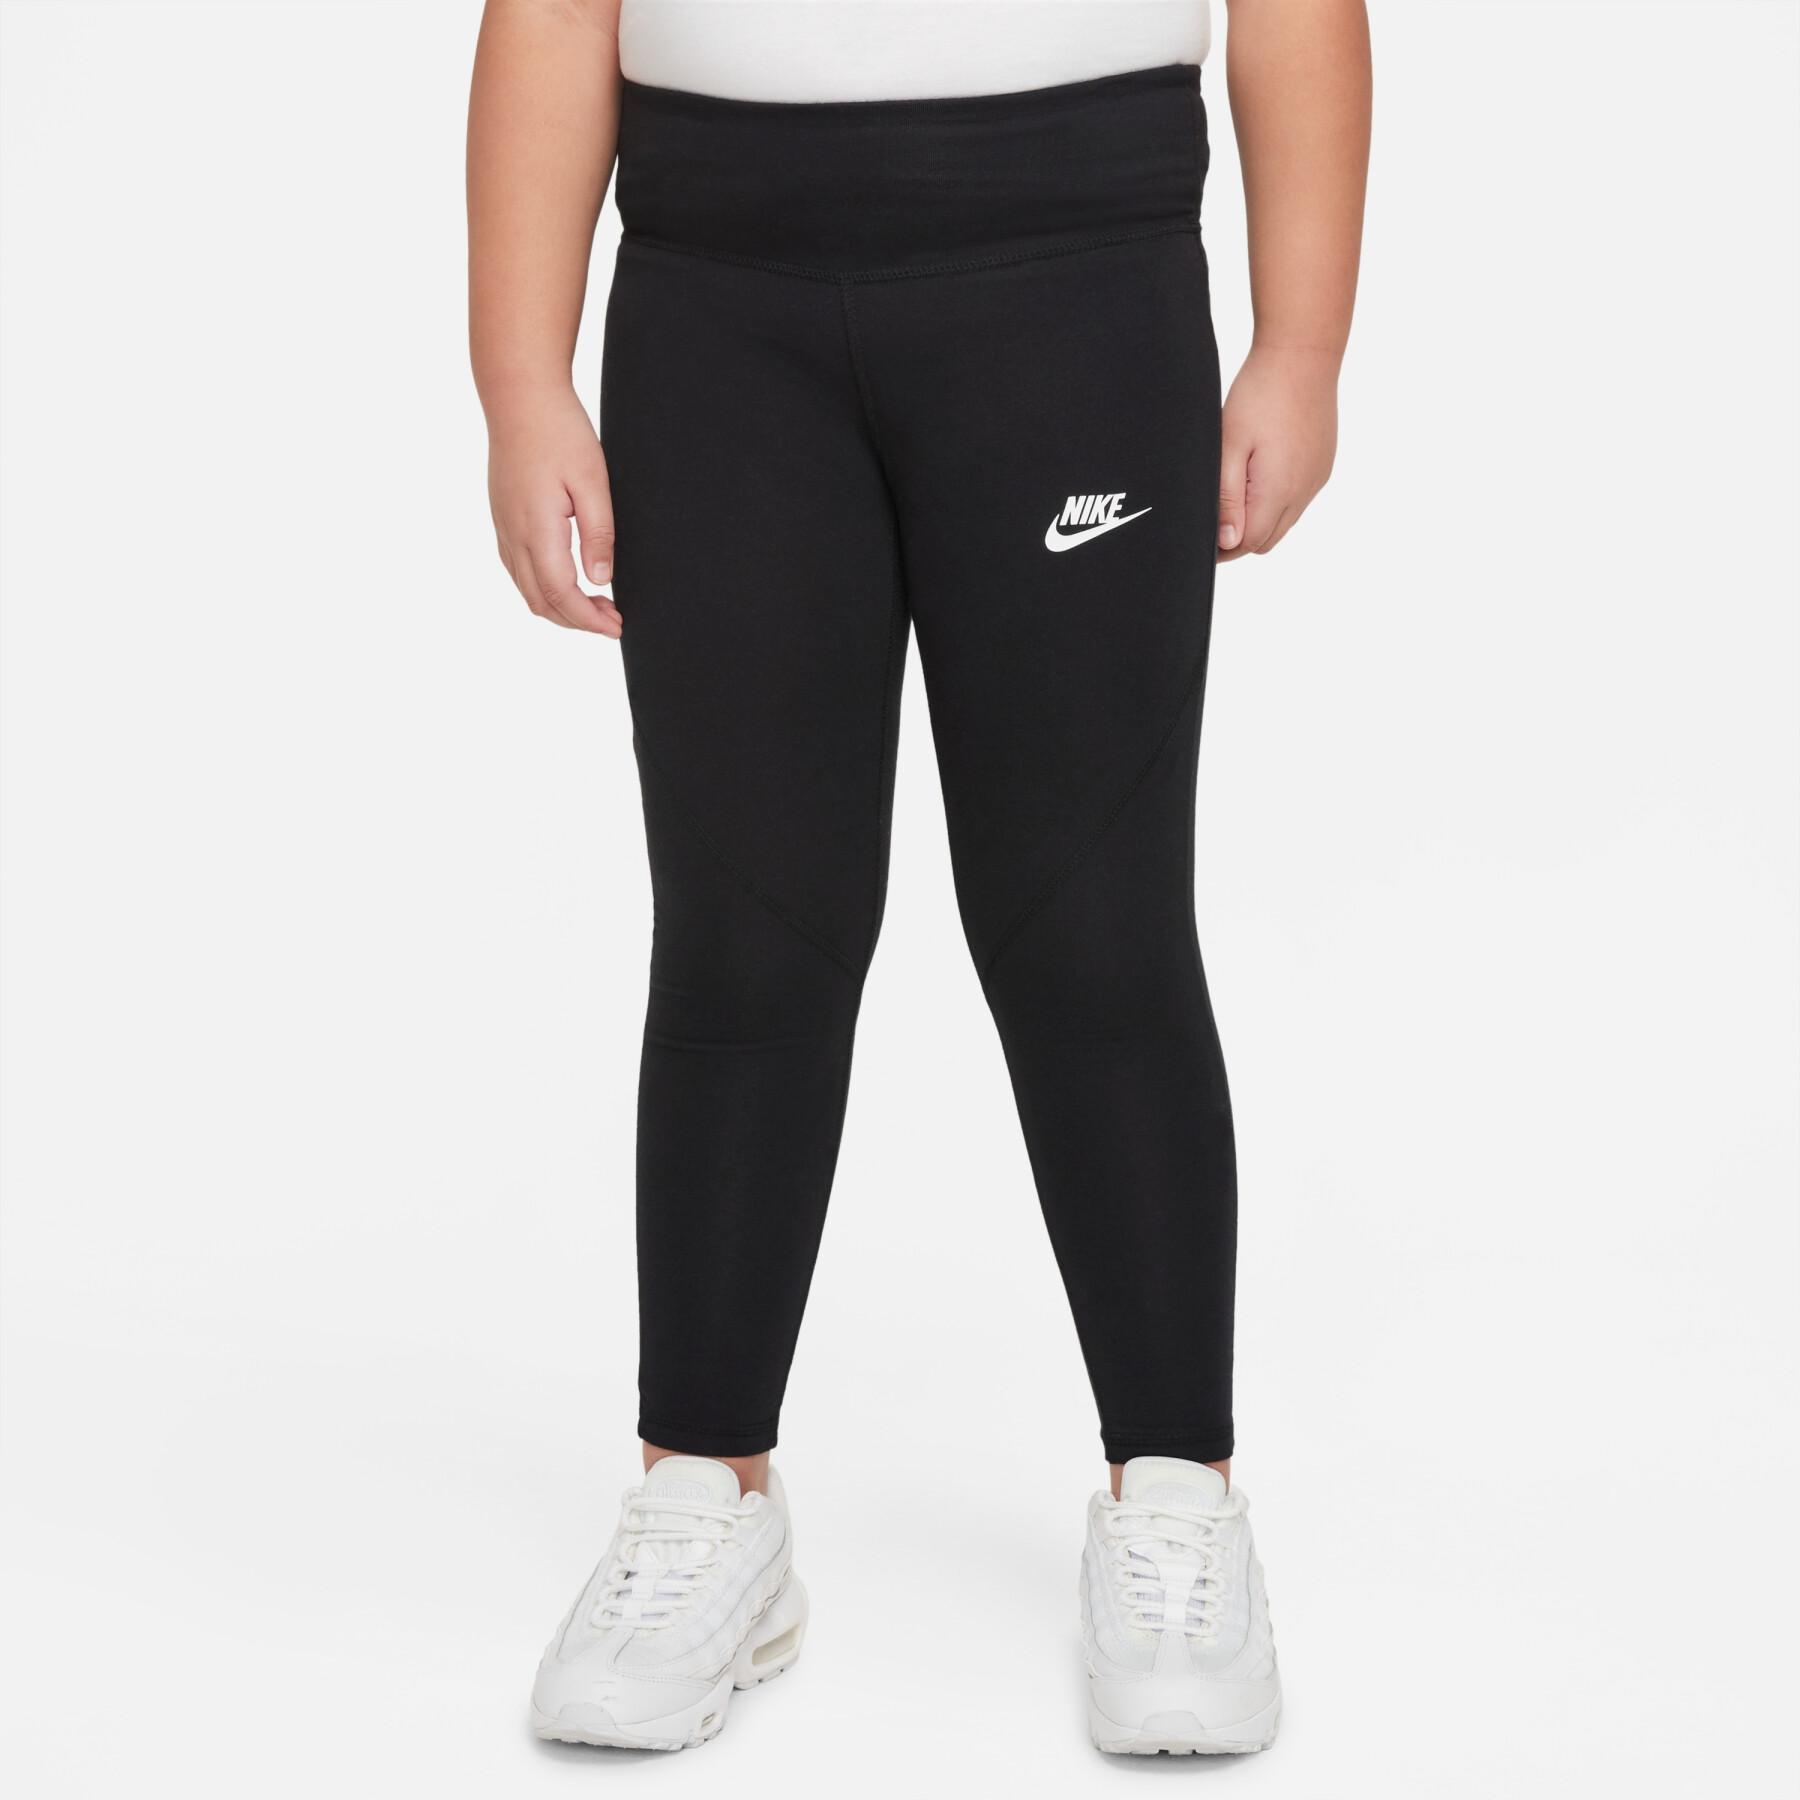 Meisjes legging Nike Sportswear